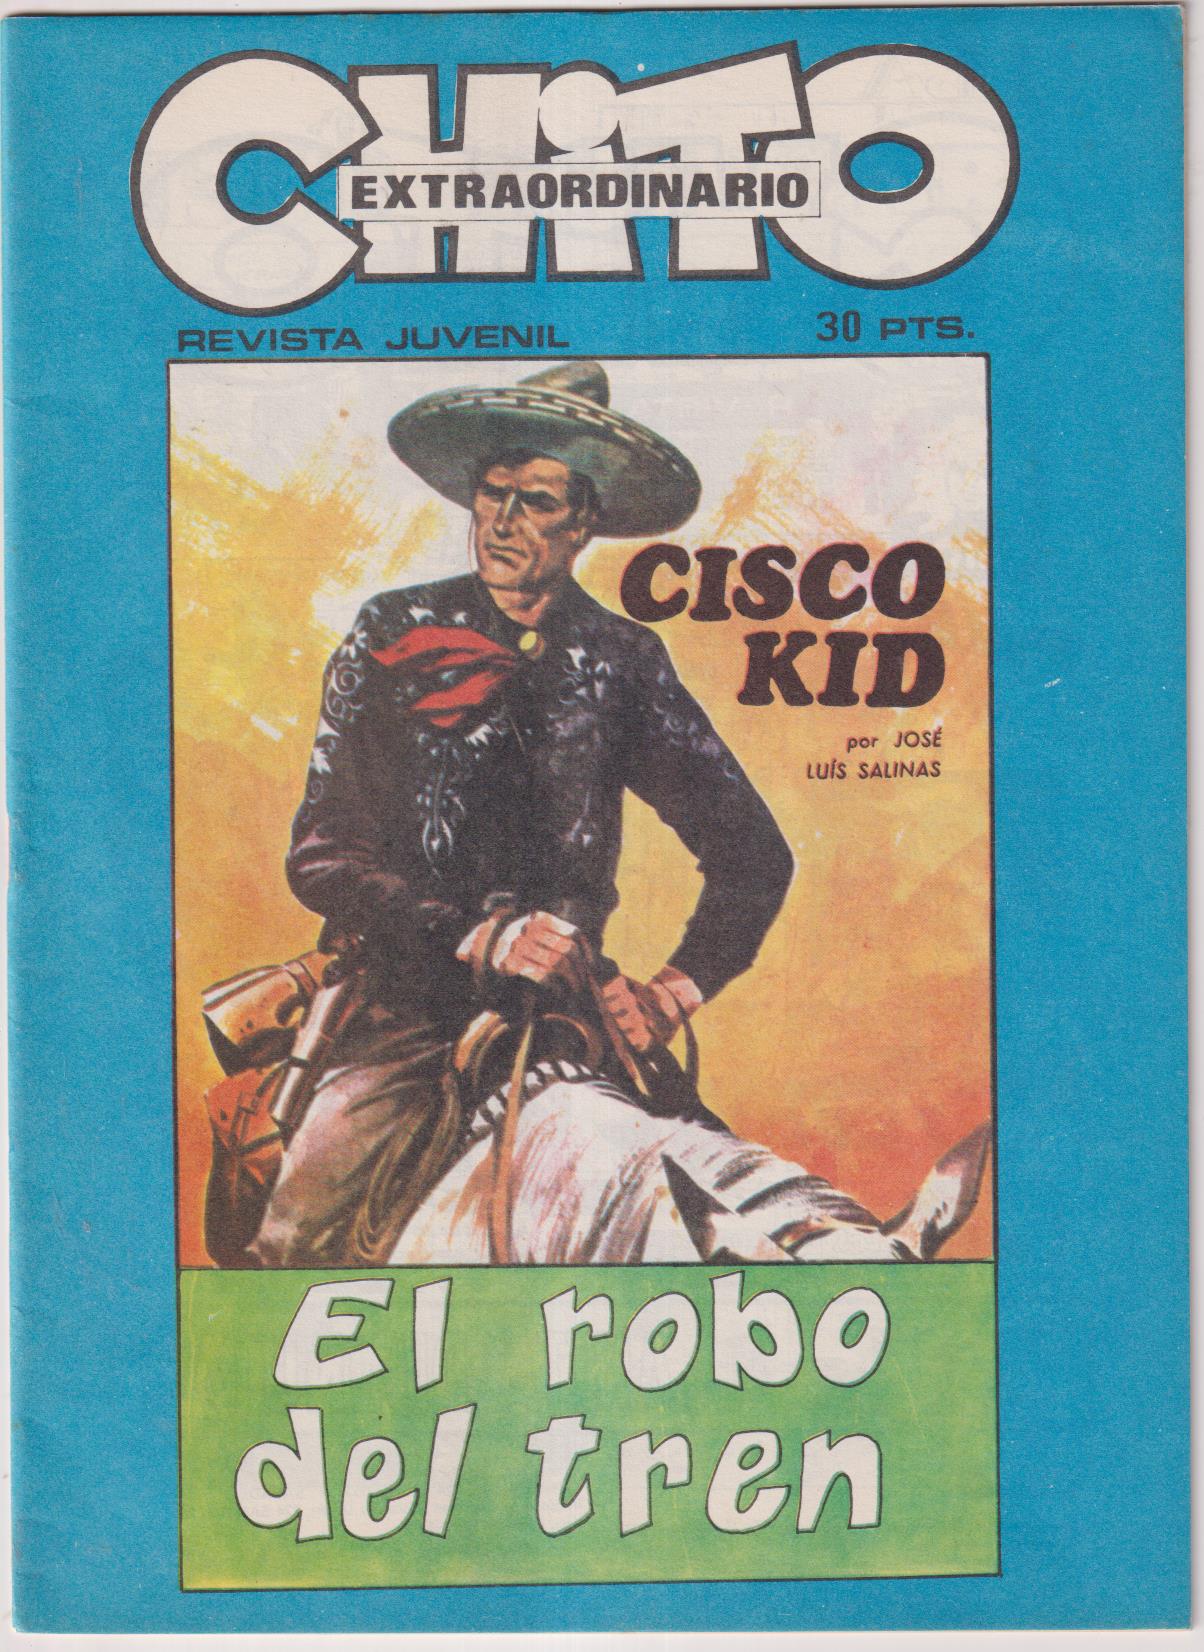 Chito Extraordinario Cisco Kid. El robo del tren